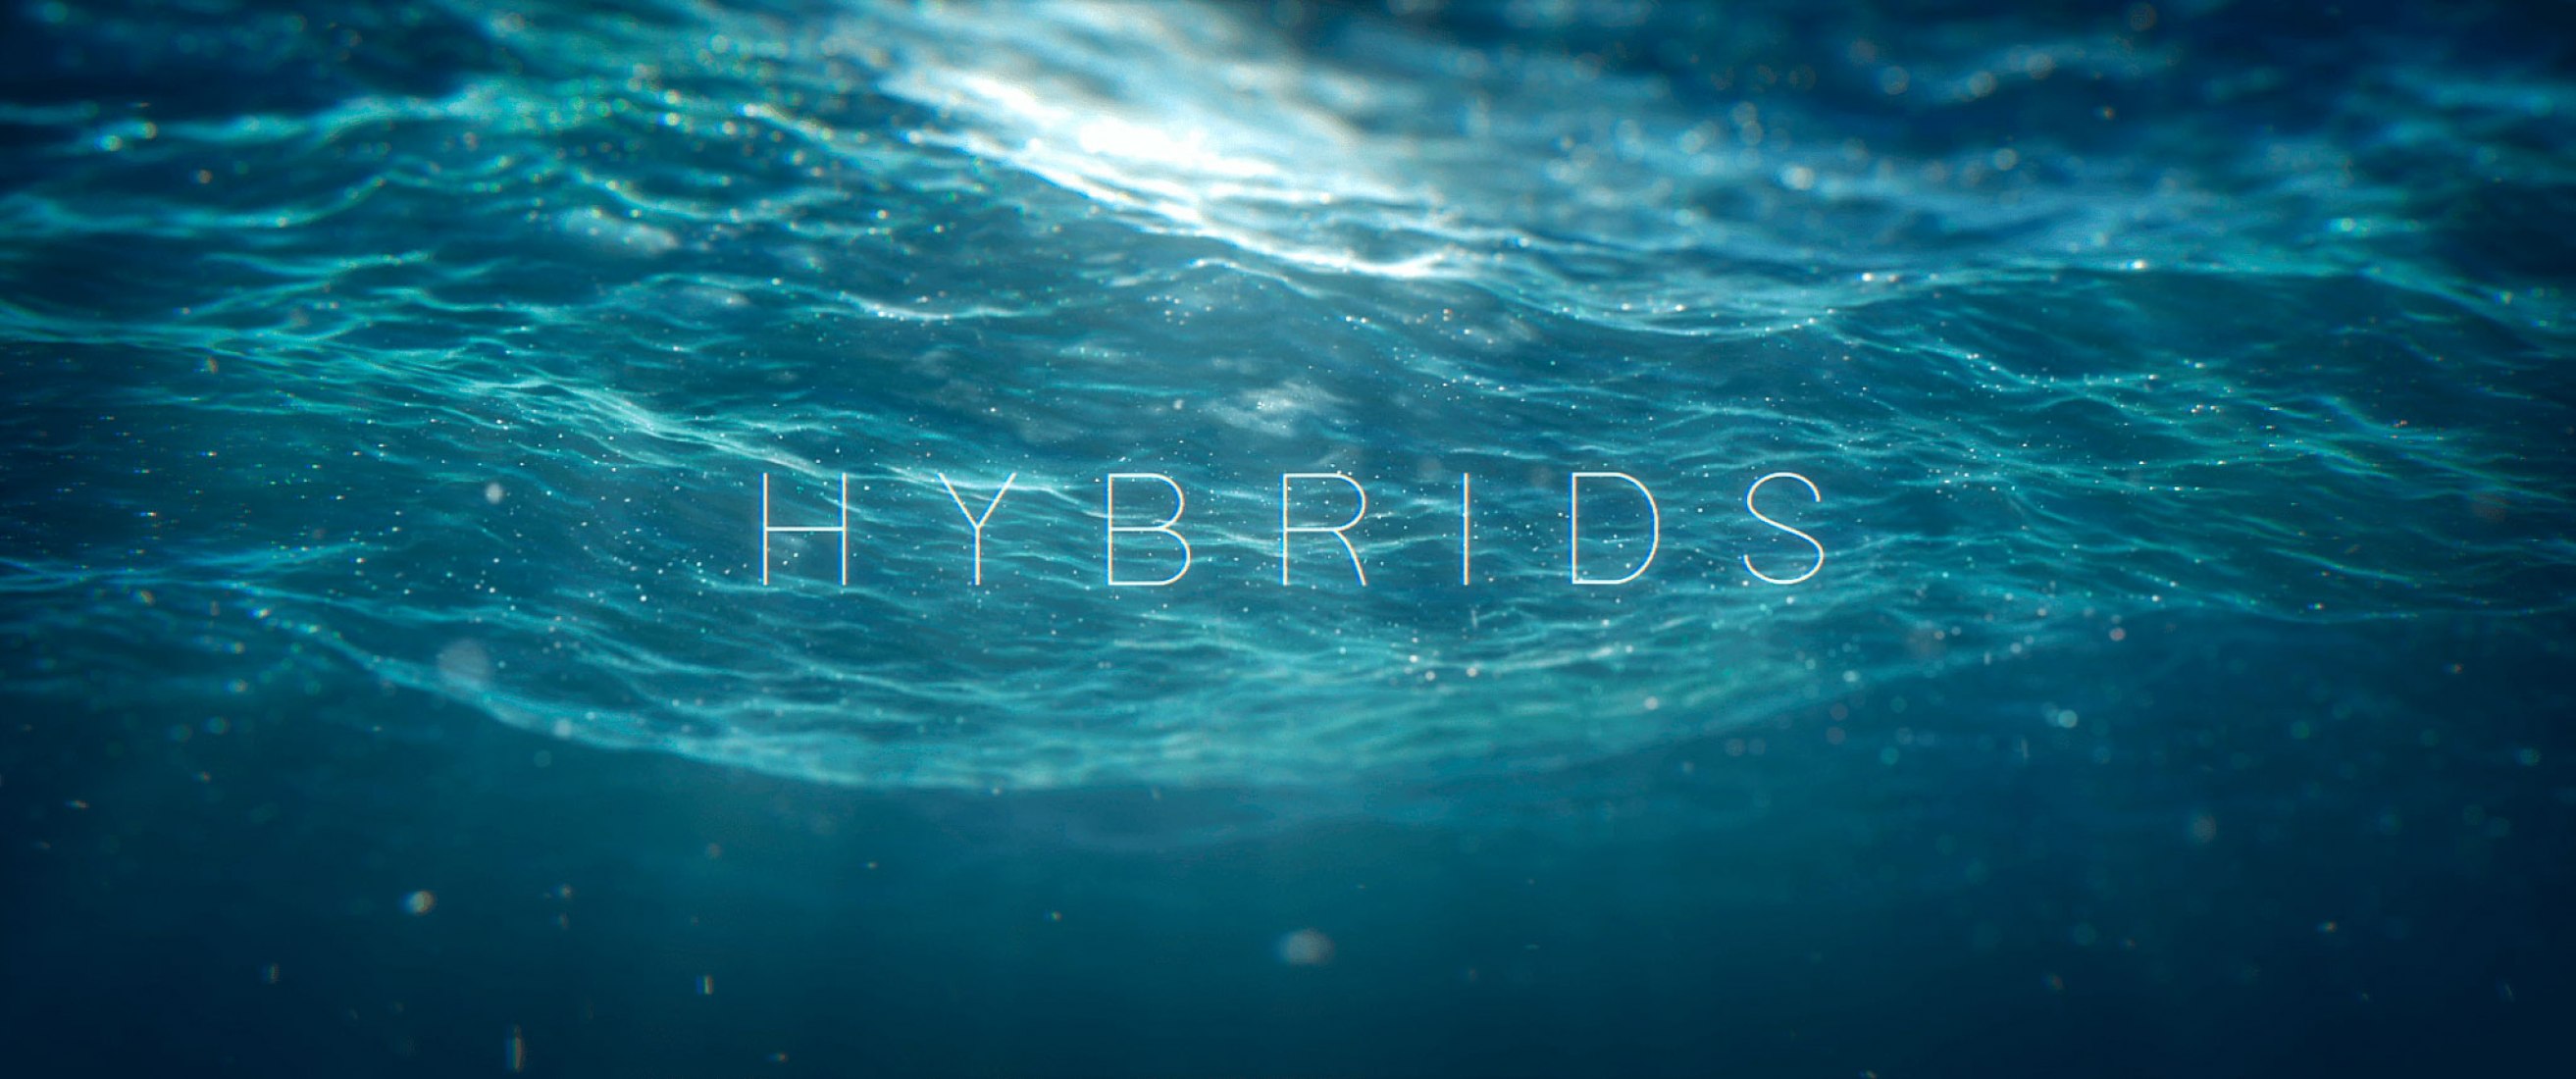 Hybrids Short Film by Florian Brauch, Matthieu Pujol, Kim Tailhades, Yohan Thireau, Romain Thirion